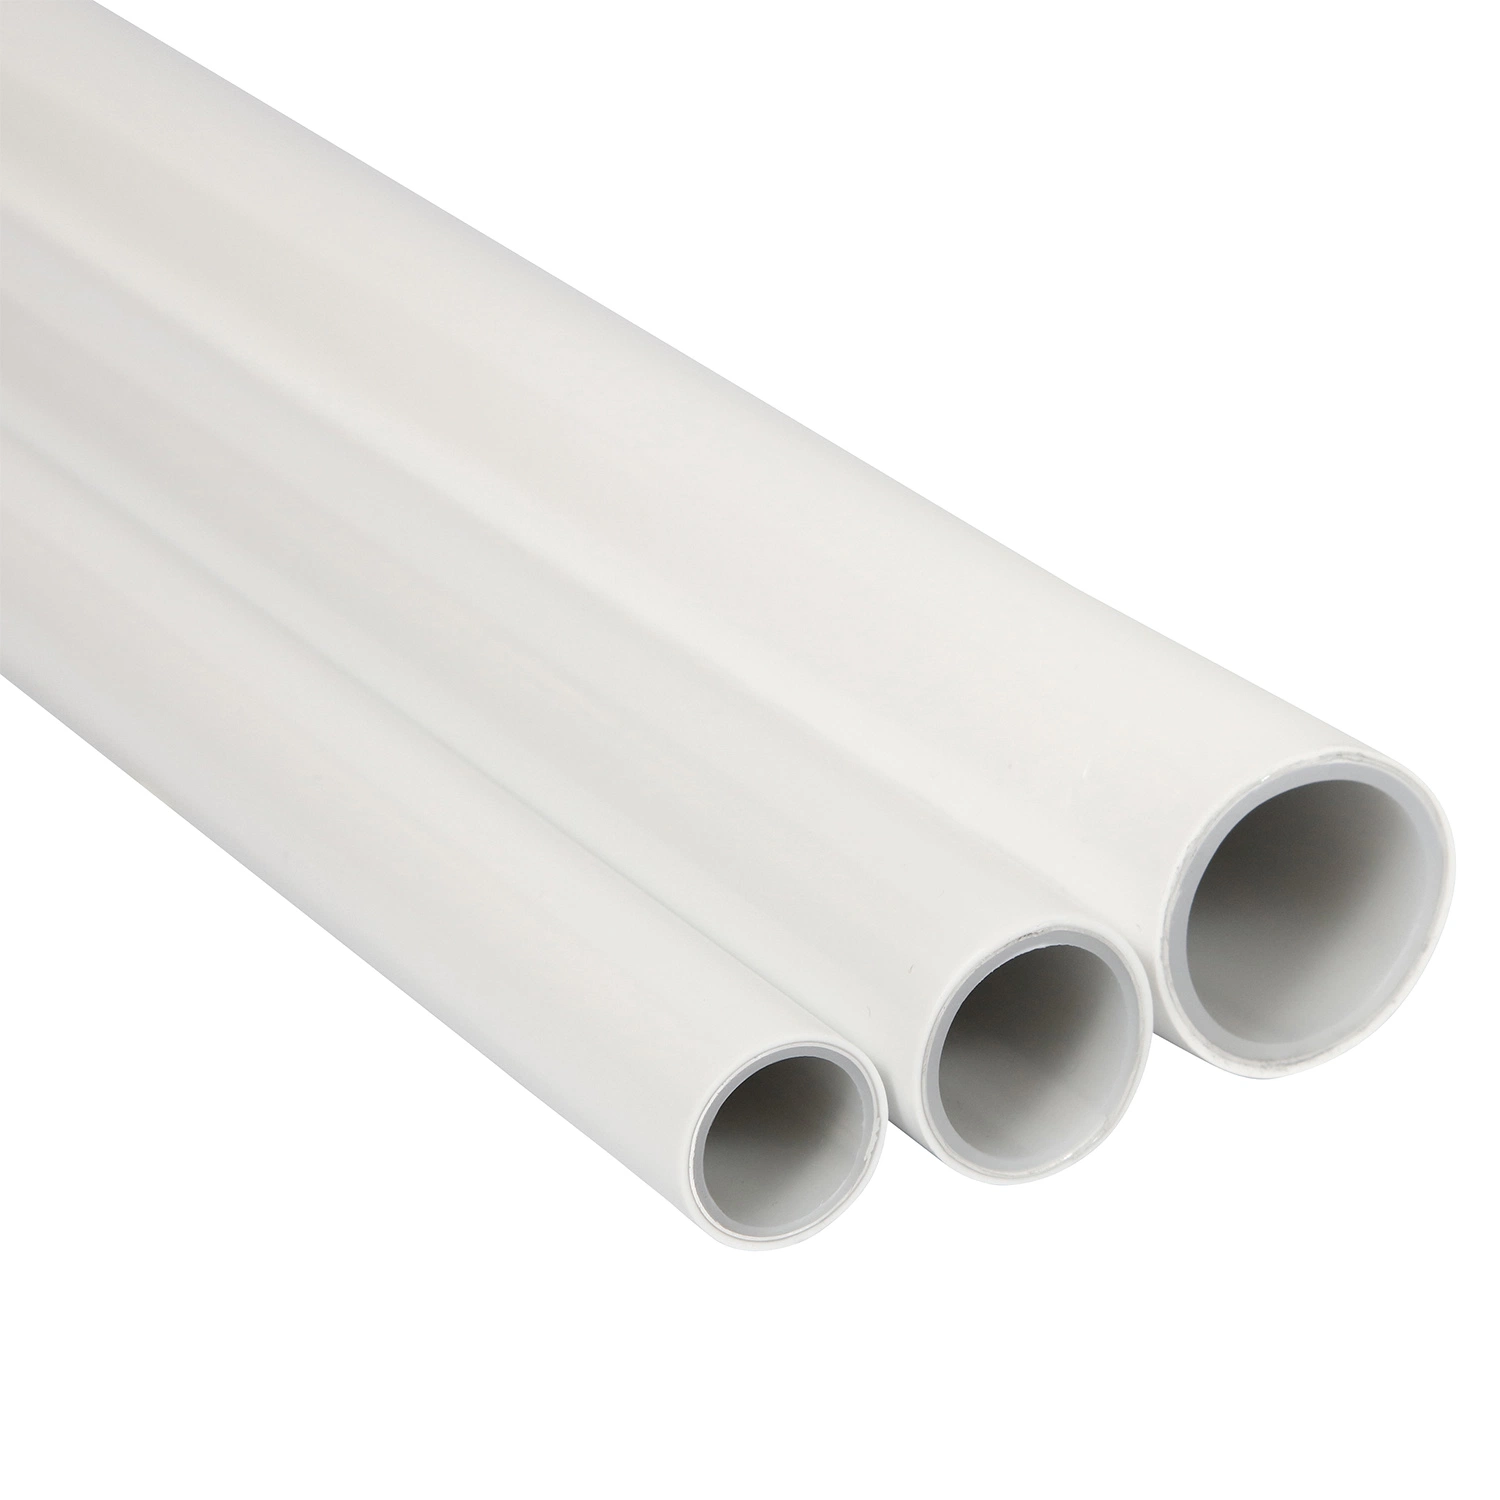 Pex-Al-Pex Pipe Composite Aluminium Plastic Multilayer Pipe Pex Tube for Water Supply and Underfloor Heating Plastic Tube